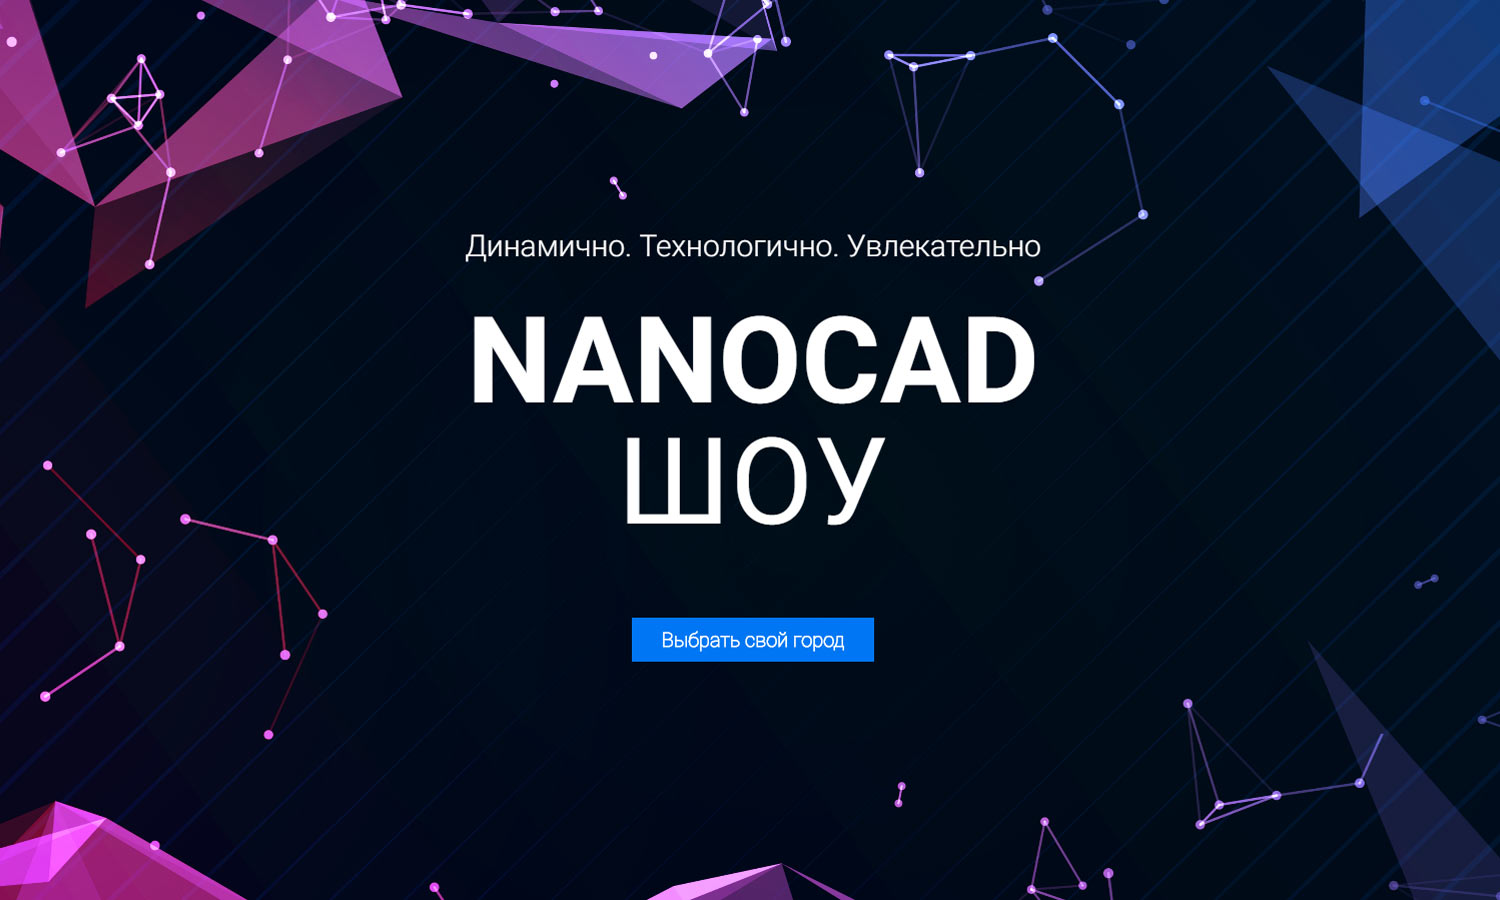 http://show.nanocad.ru/?utm_source=sapr&utm_medium=news&utm_campaign=show